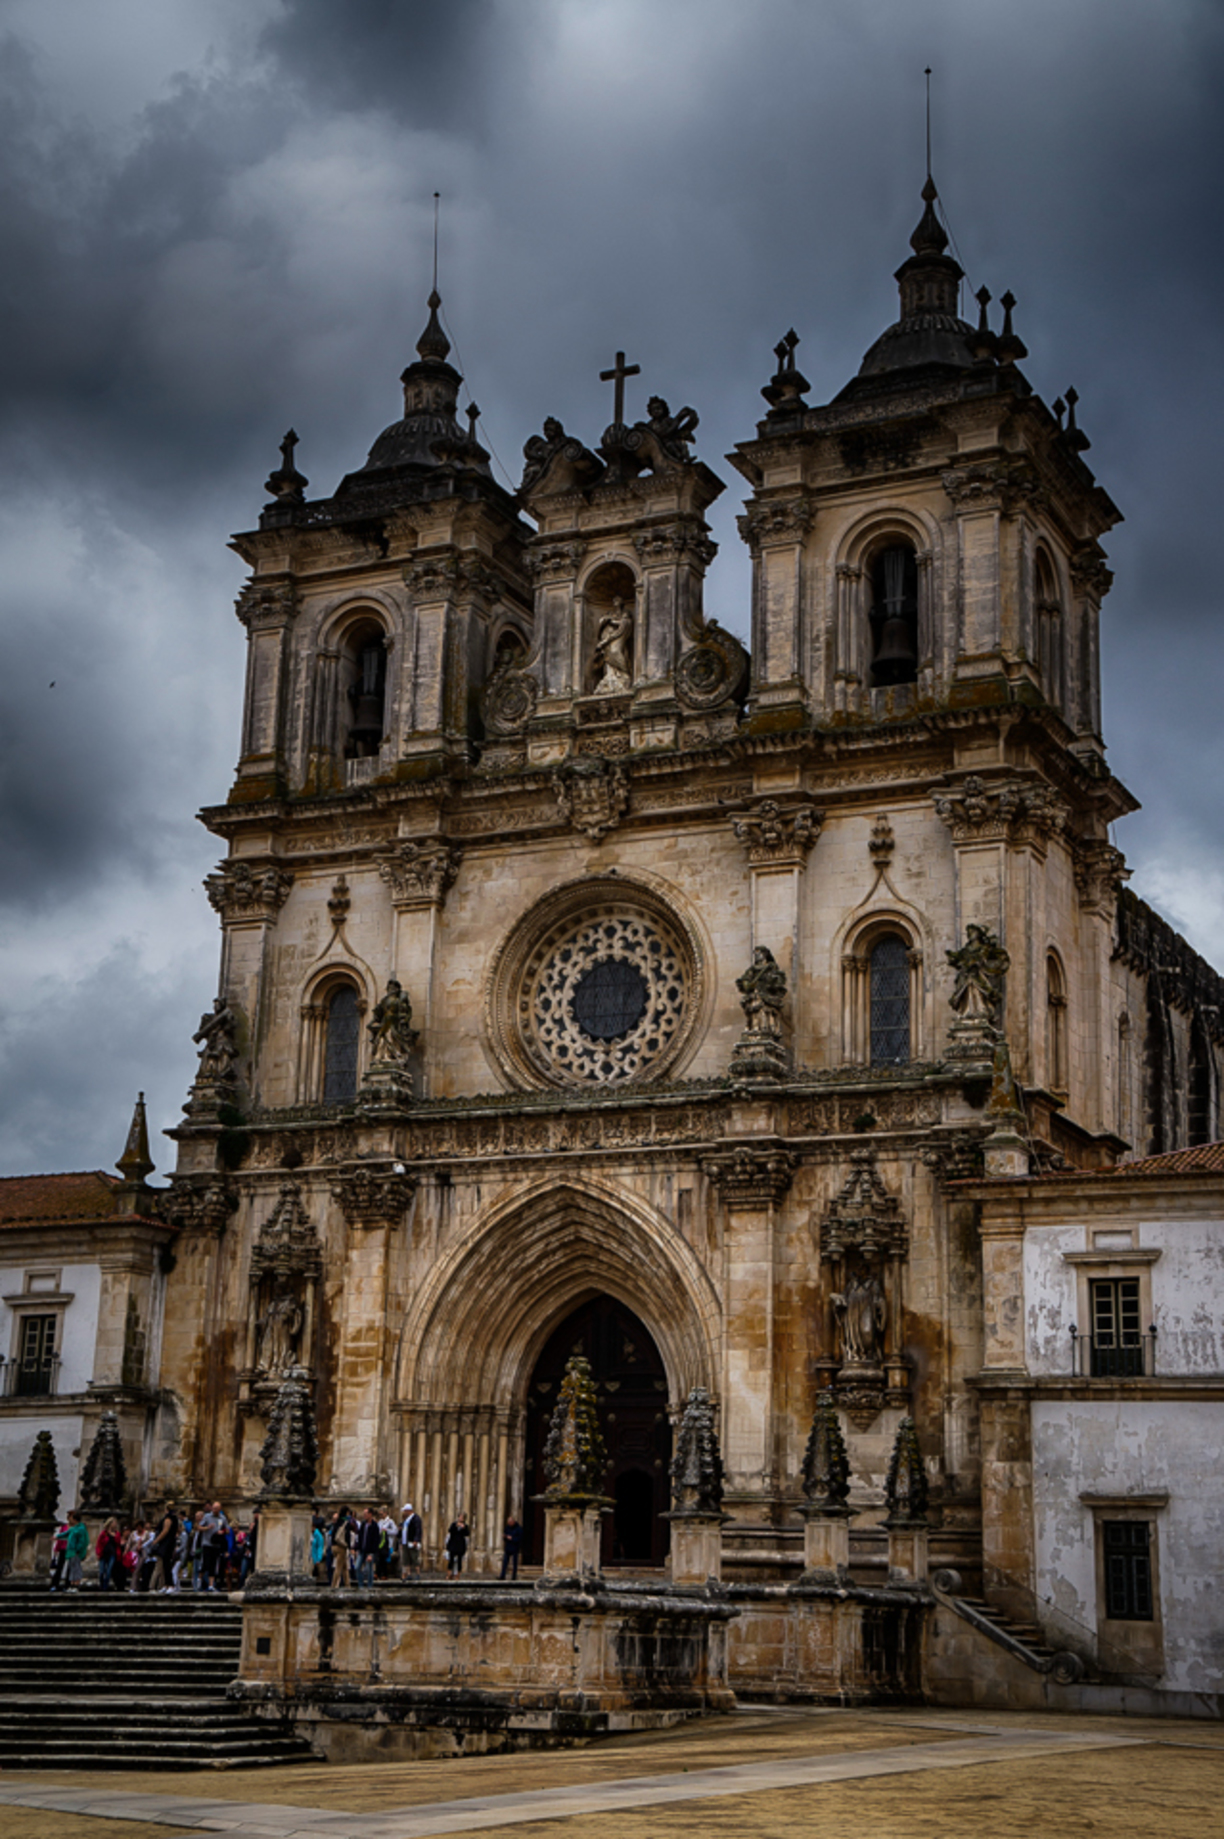 Alcobaça Monastery, Alcobaça, Portugal - The Alcobaça Monastery is...